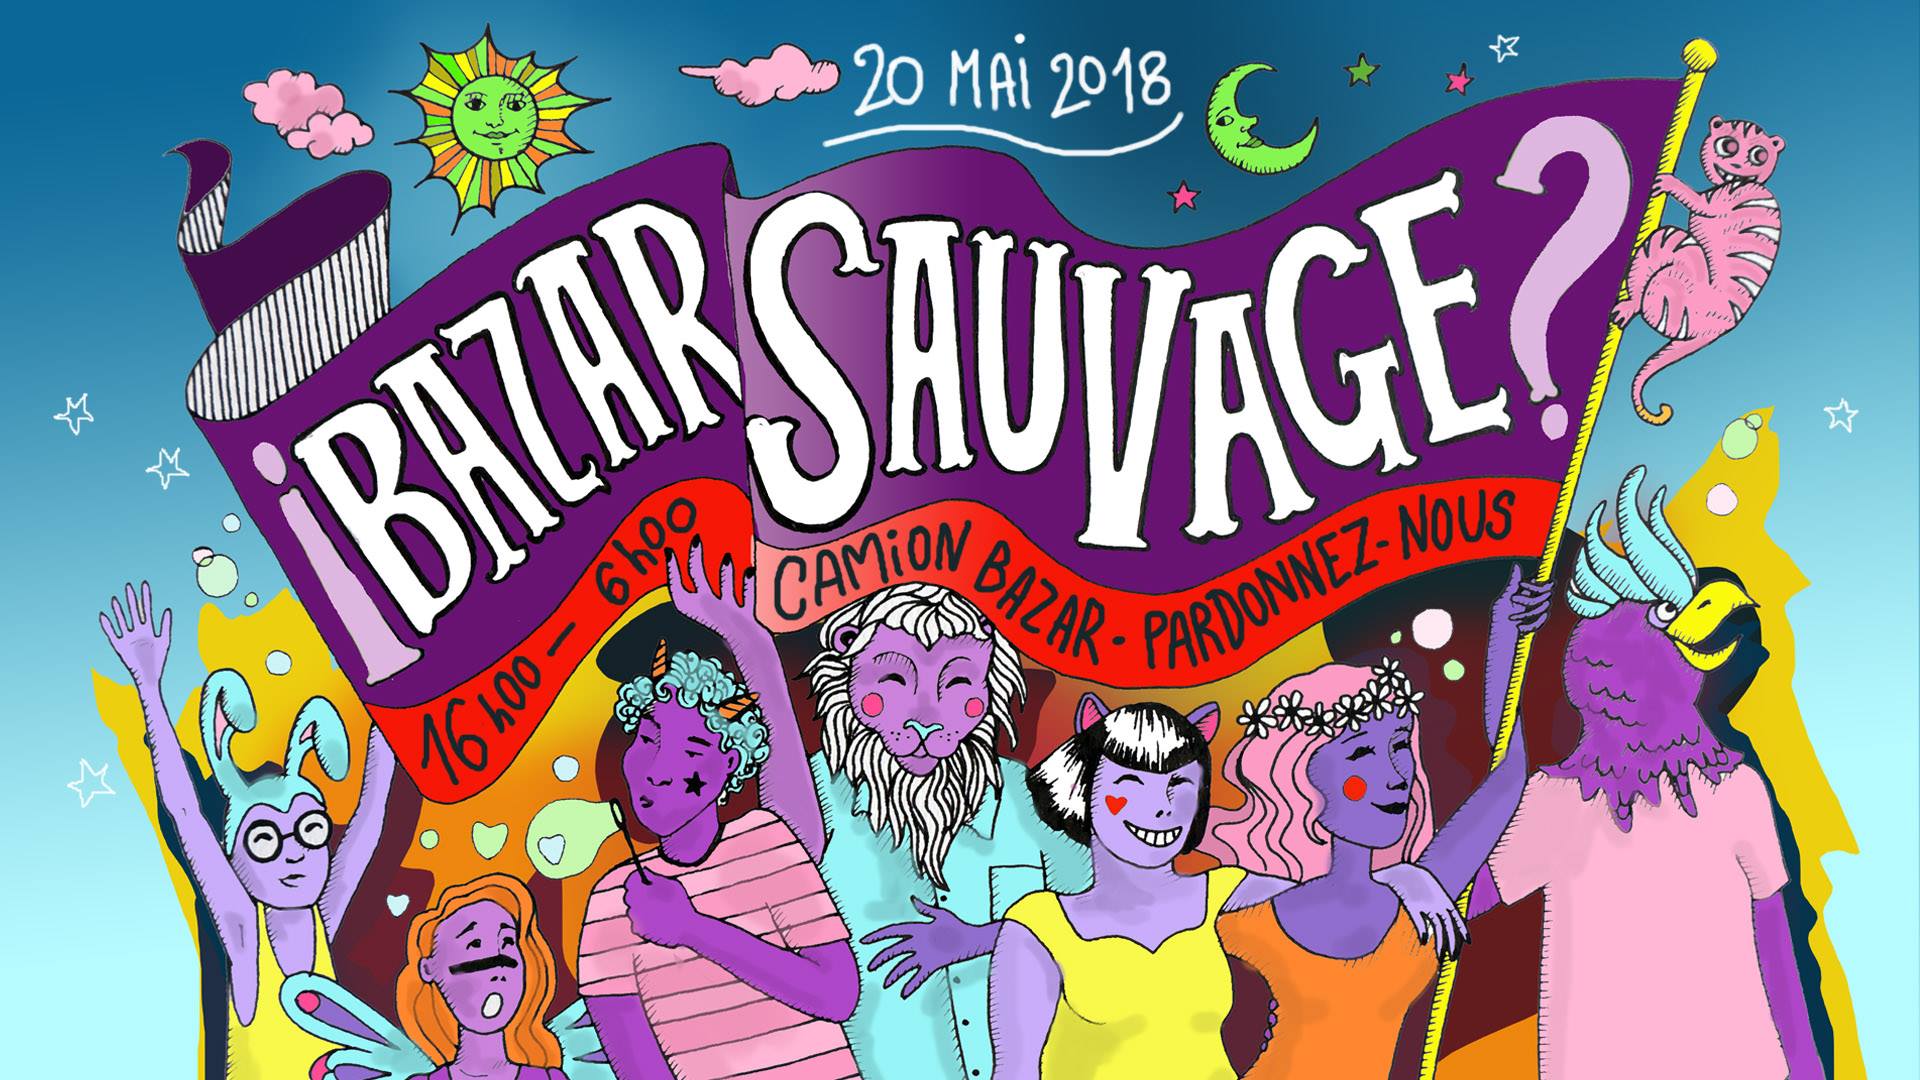 Le Bazar Sauvage au Cabaret Sauvage le 20 mai 2018